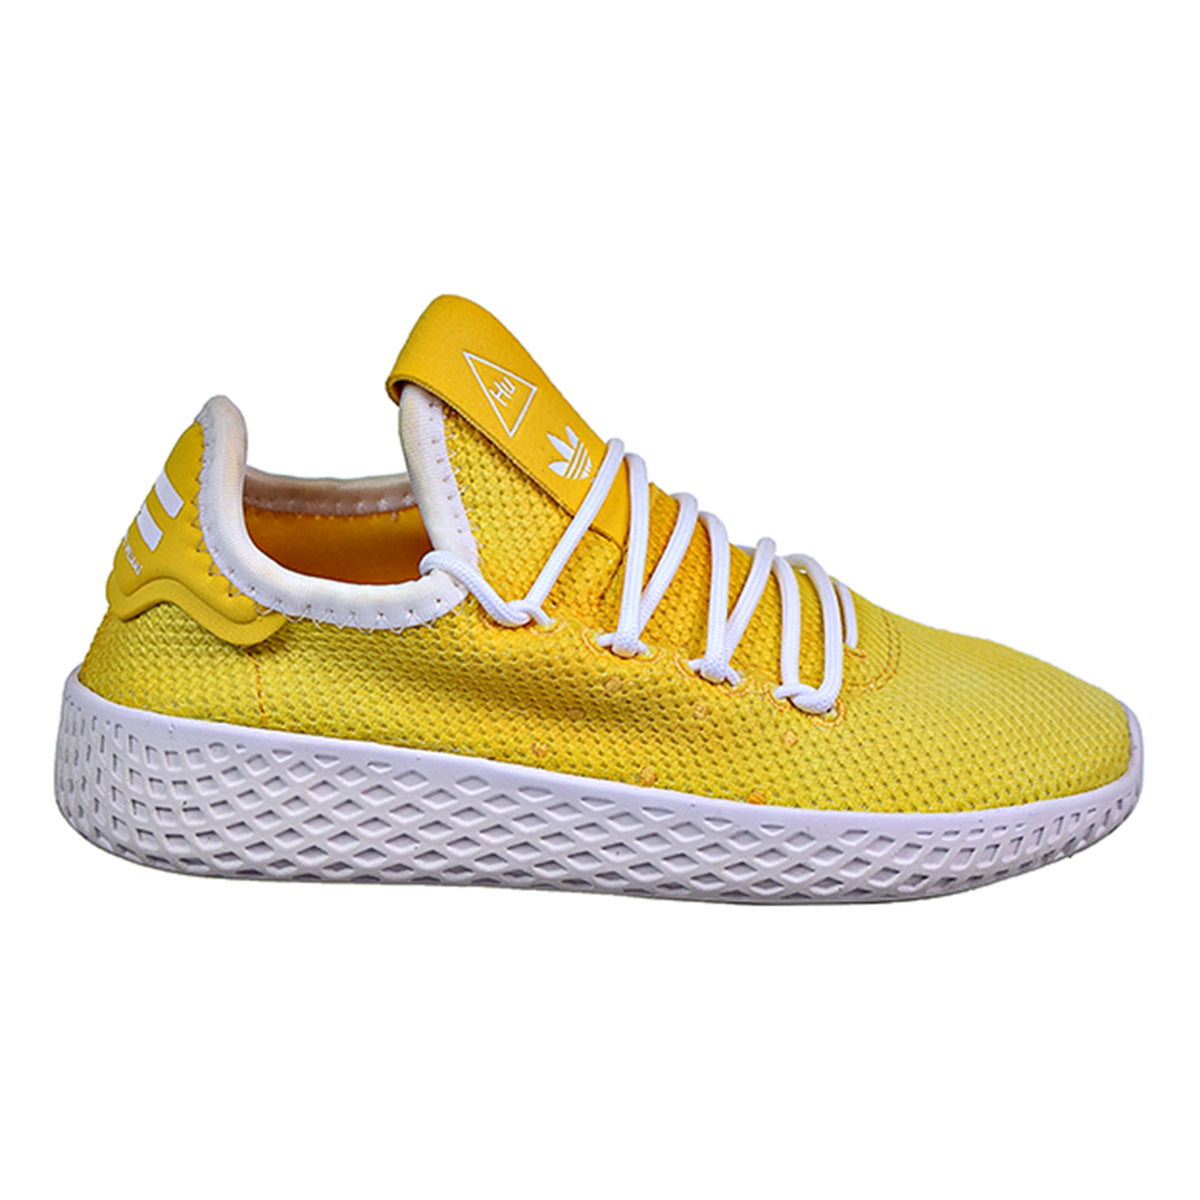 Adidas Pharrell Williams Tennis HU Little Kids' Shoes Tech Beige/Chalk